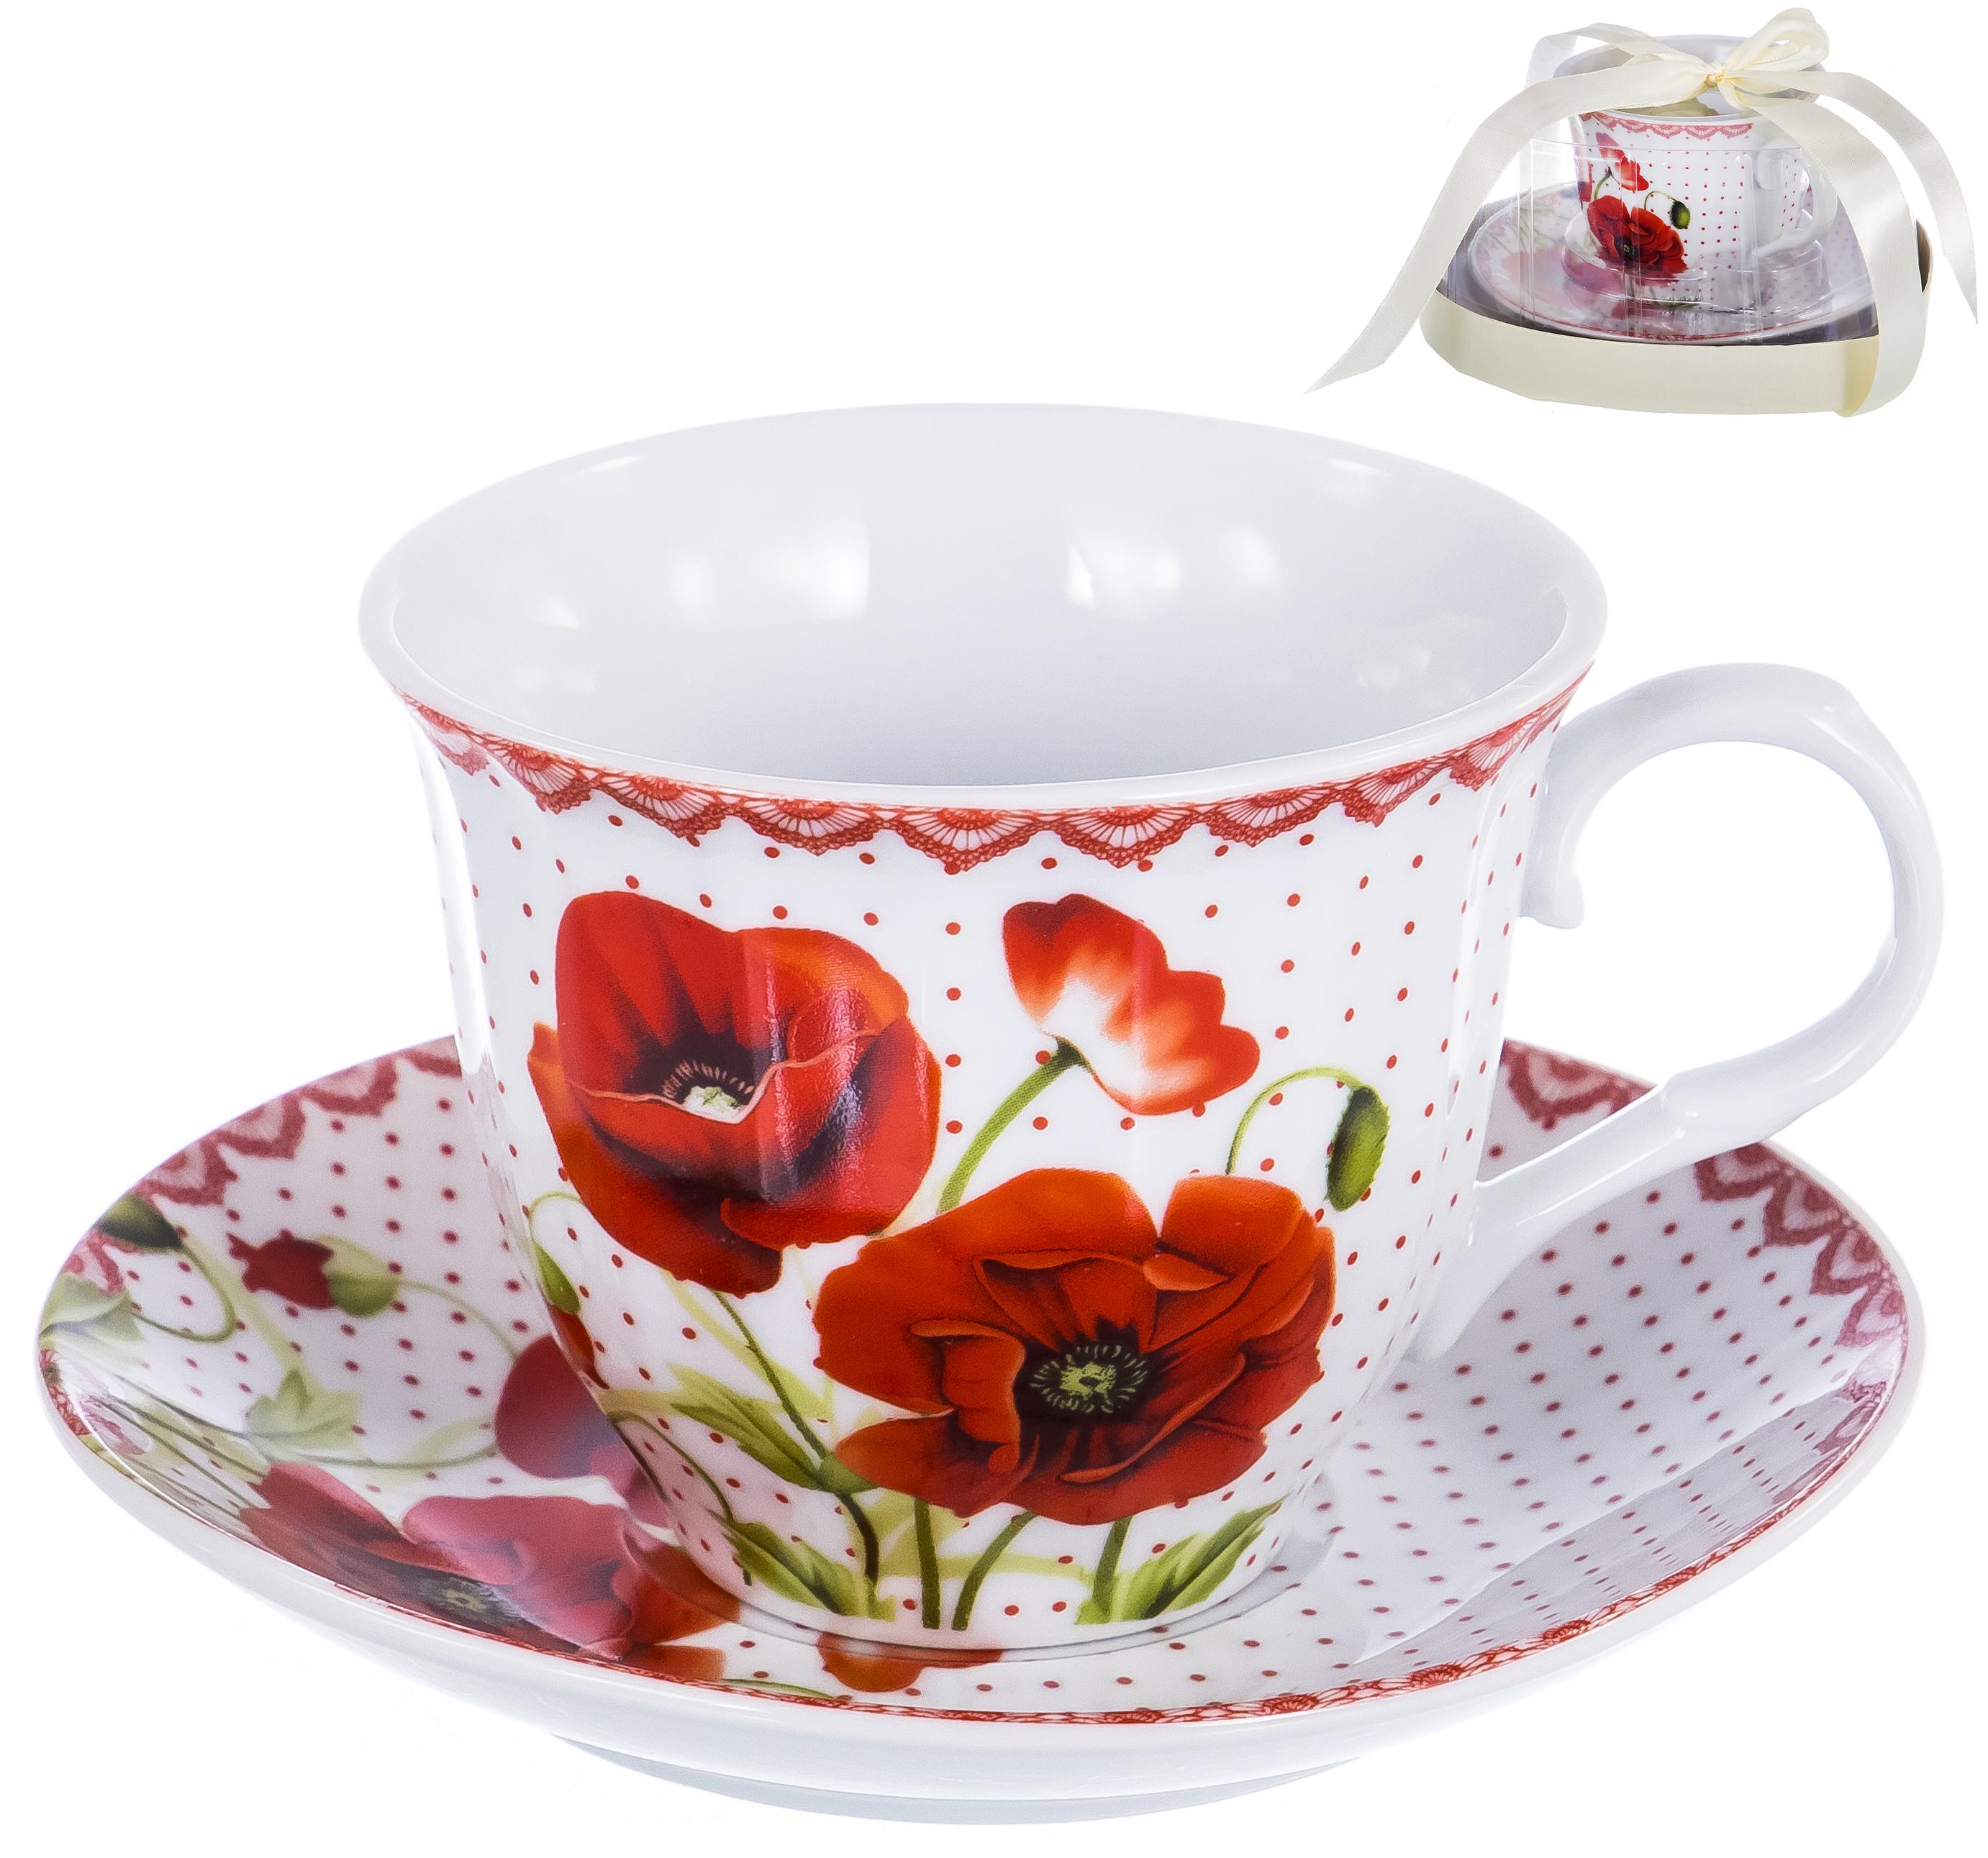 ФЛОРА, набор чайный (2) чашка 220мл + блюдце, подарочная упаковка PVC 124-01040